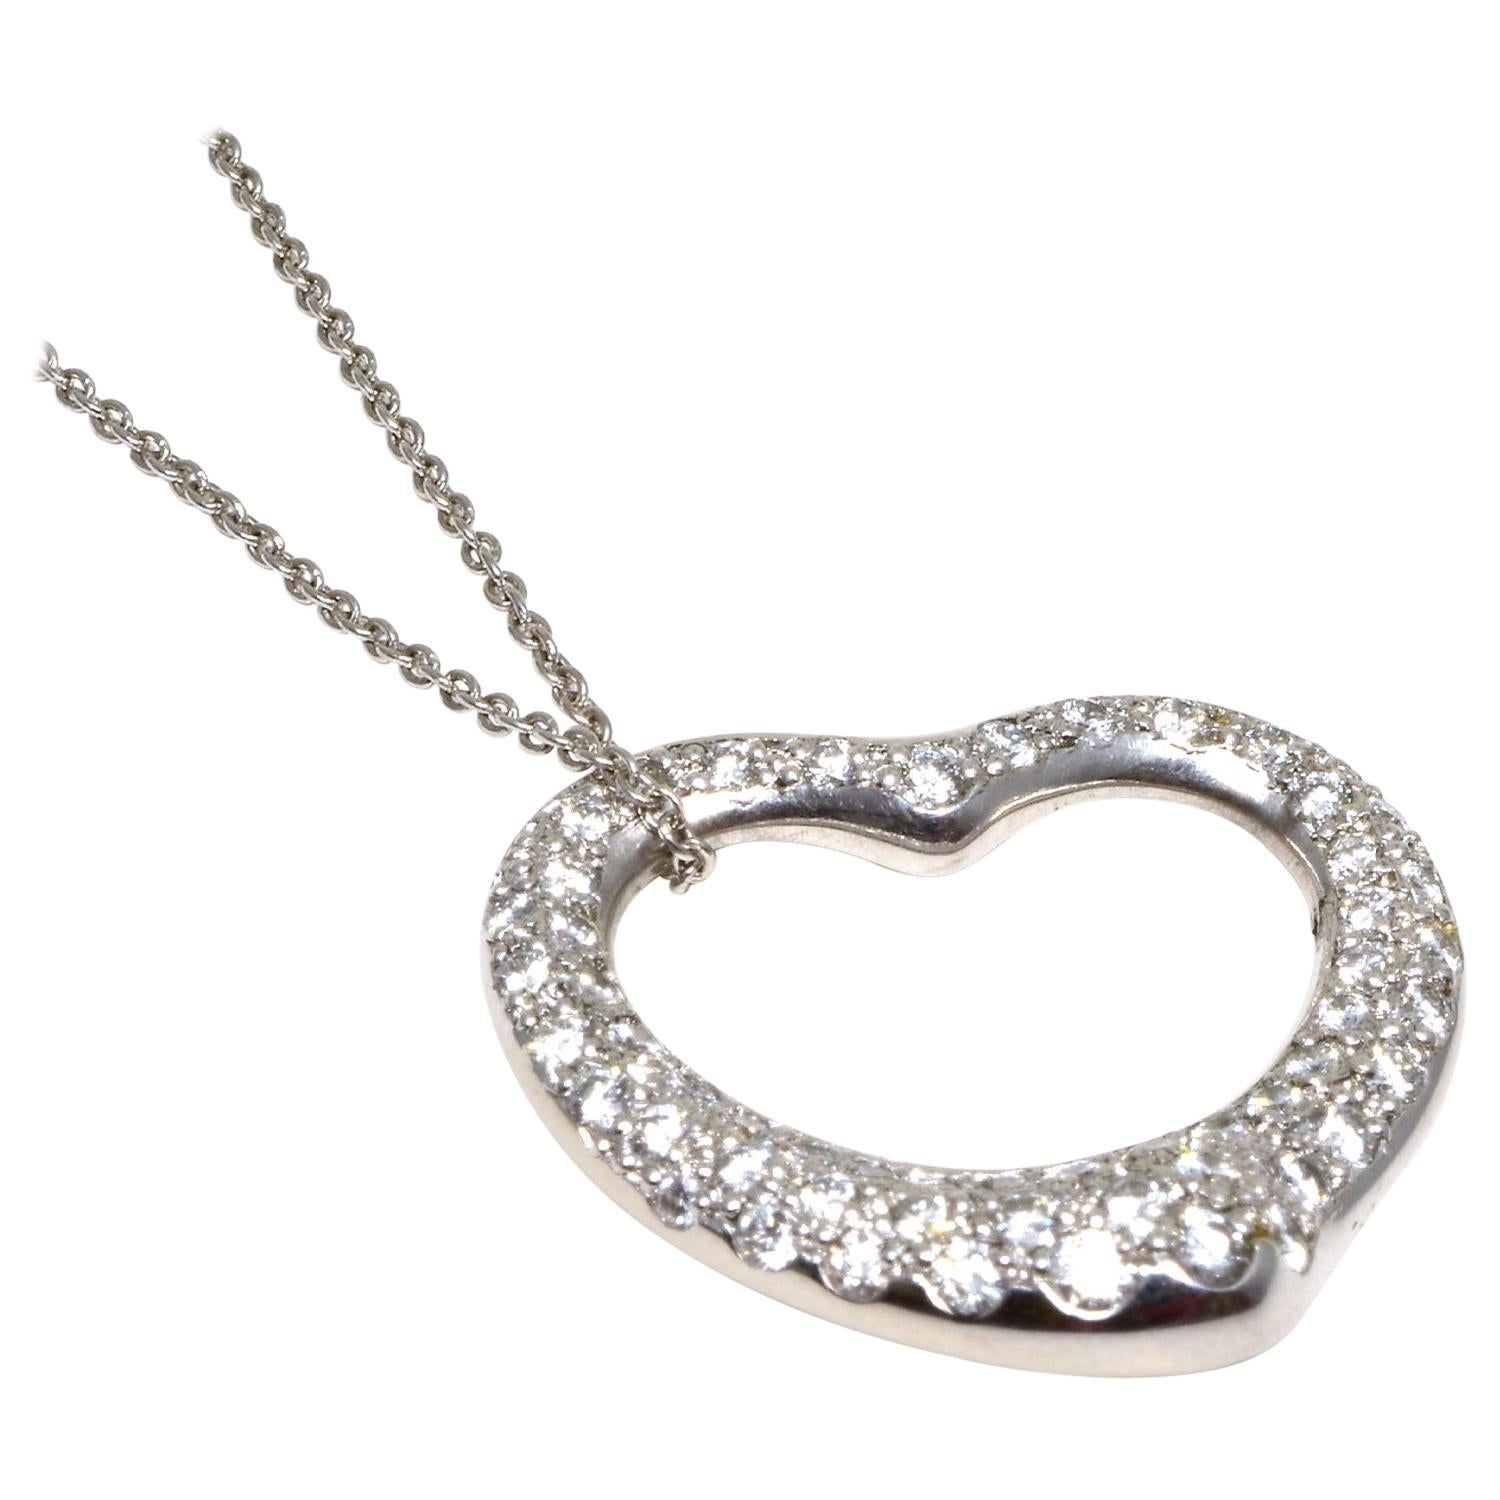 Tiffany & Co. Elsa Peretti Diamond Open Heart Pendant Necklace in Platinum